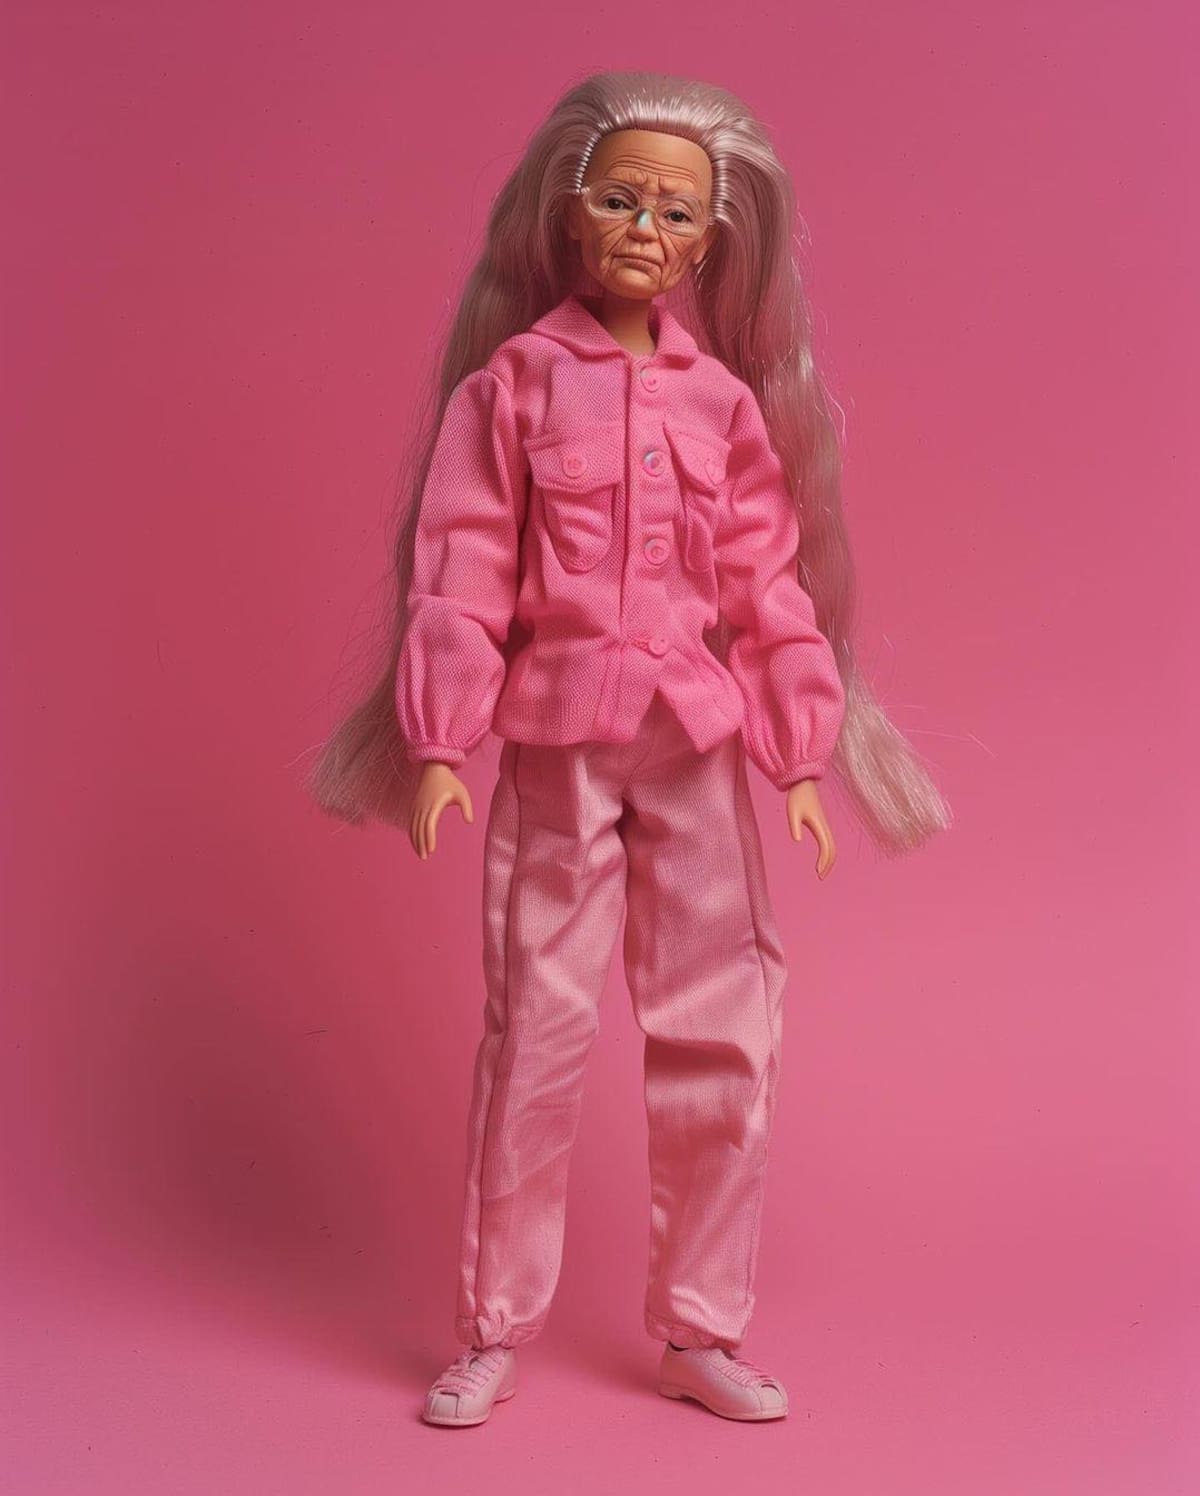 Barbie ahora representa a mujeres influyentes en ciencia, política y deporte. ¡Una inspiración para las niñas de todo el mundo! (instagram)